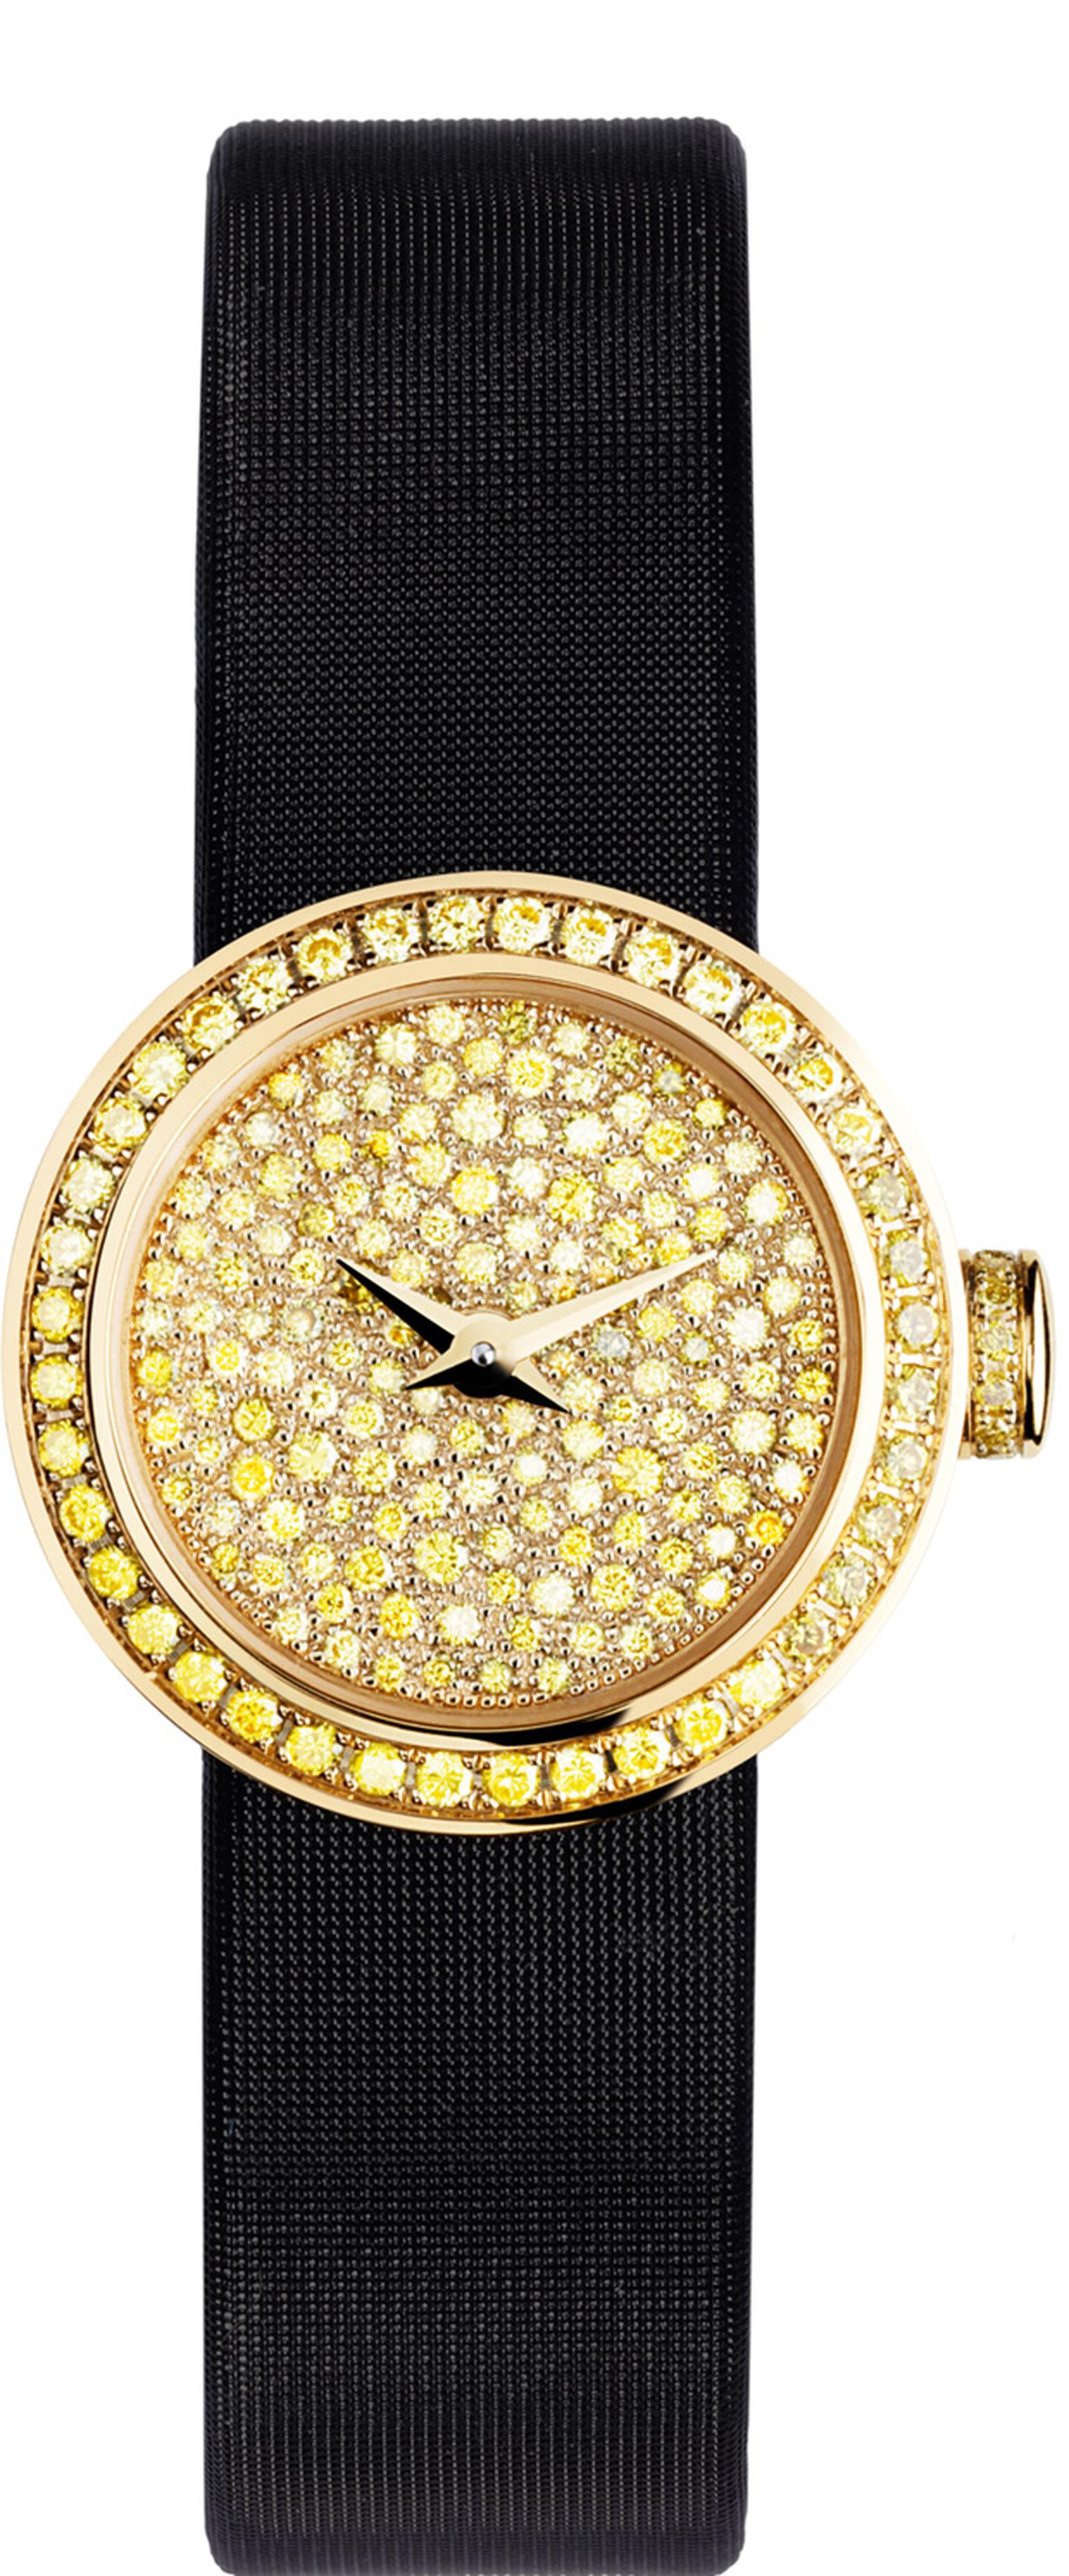 La Mini D de Dior watch in yellow diamonds